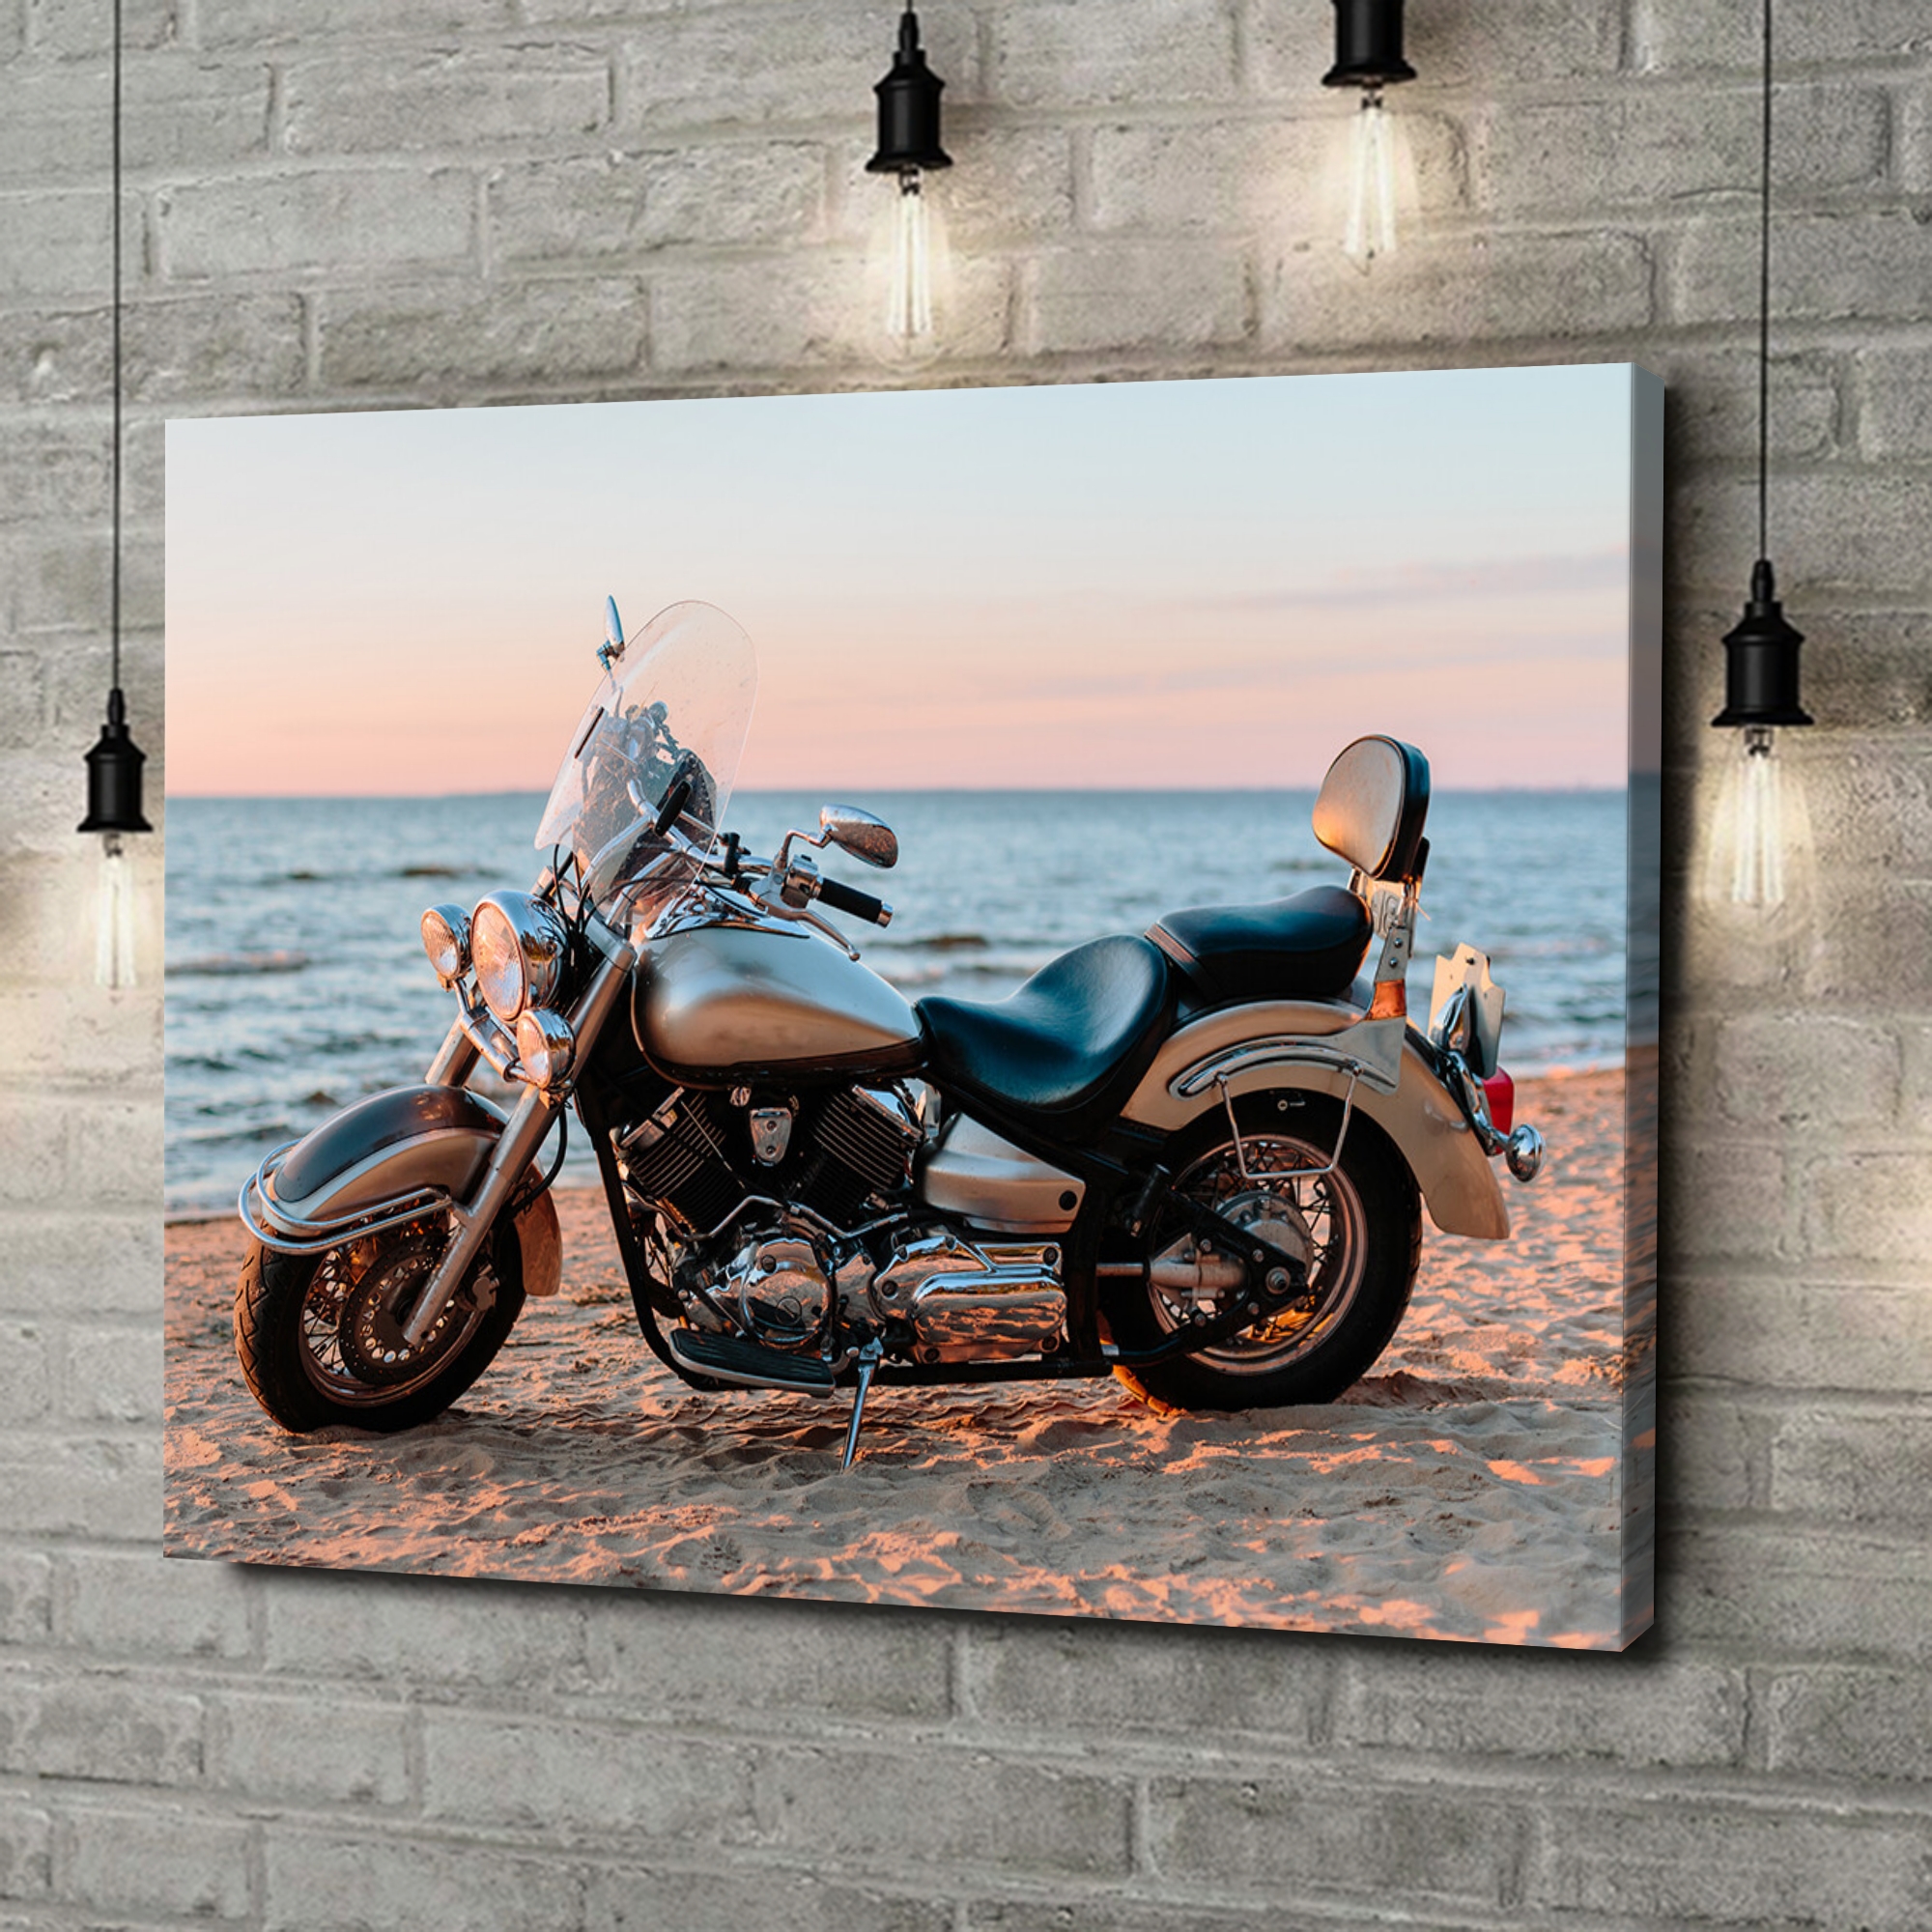 Liebesleinwand als Geschenk Motorrad am Strand